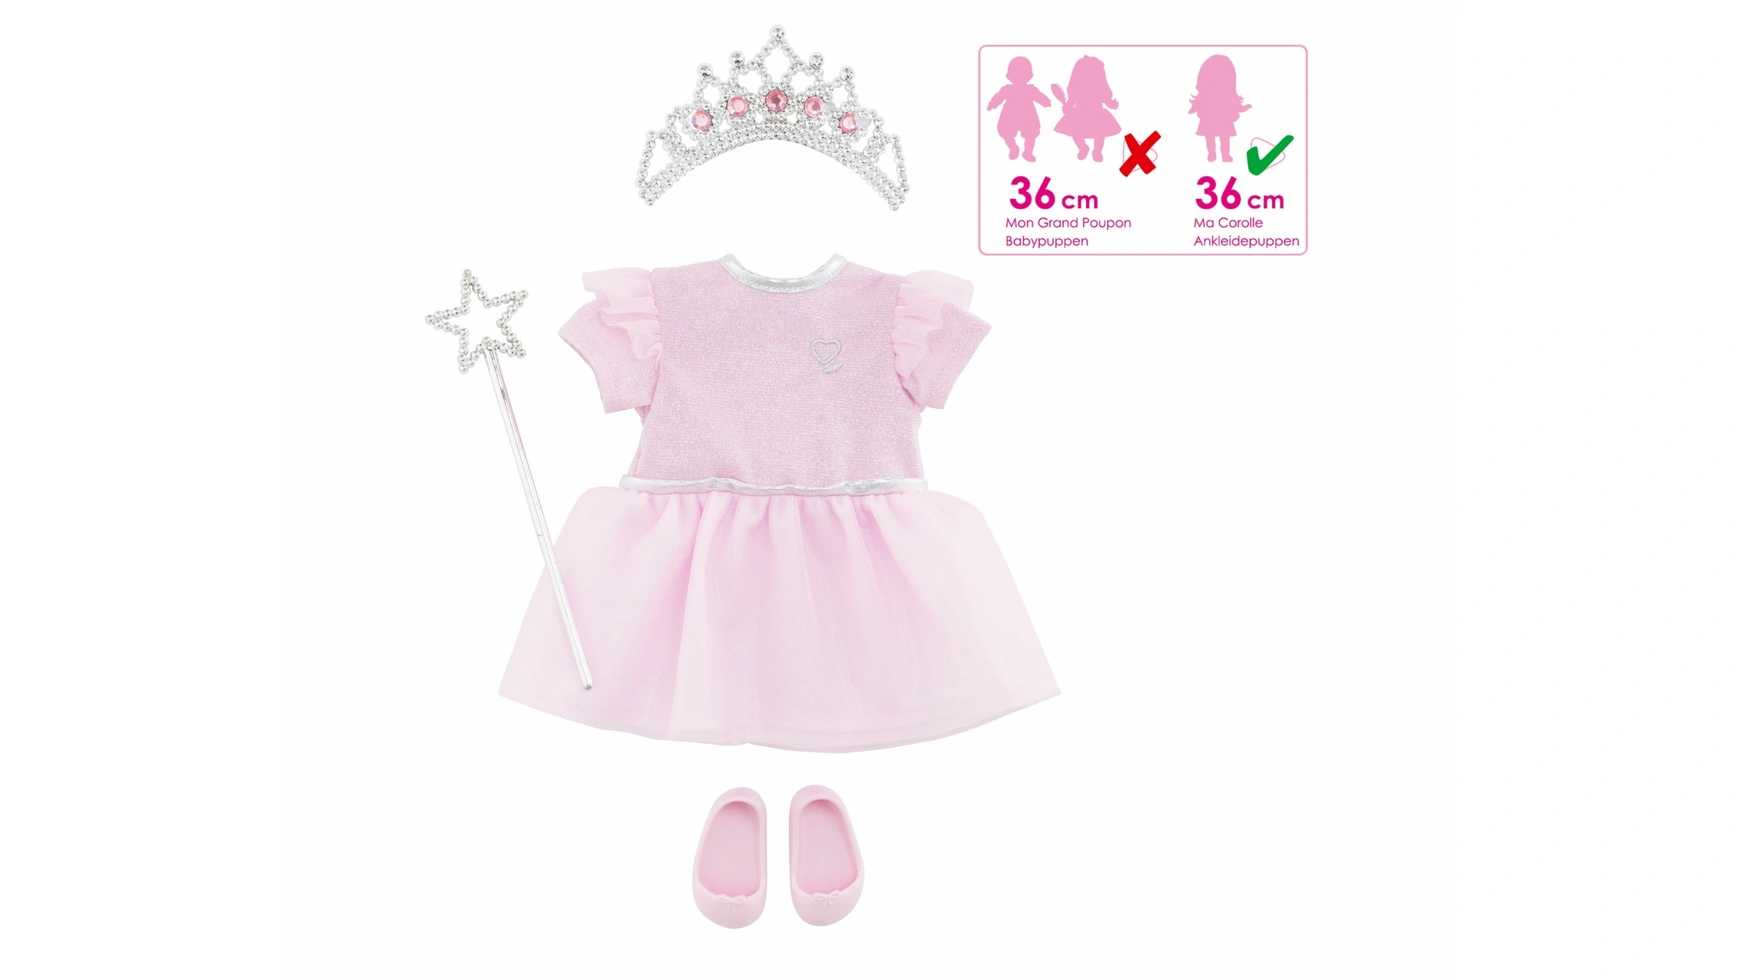 Комплект принцессы Corolle платье принцессы длиной 14 5 дюйма с юбкой для куклы аксессуары для кукол exo paola reina и 1 6 bjd детская одежда для игрушек для девочек